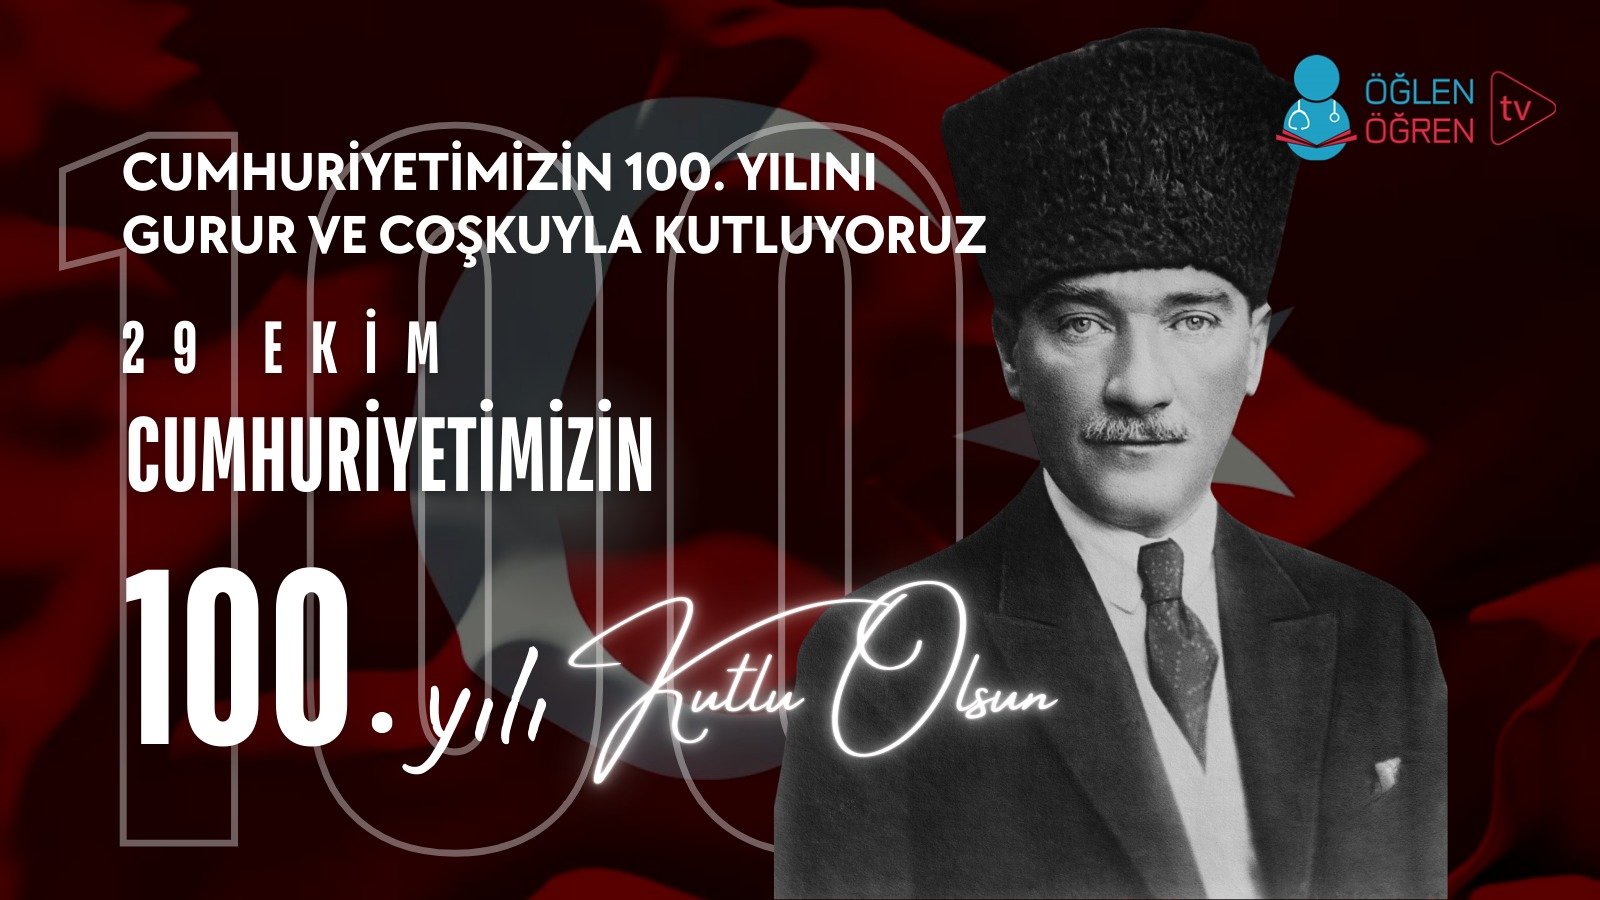 29.10.2023 tarihinde Atatürk'ün Işığında 100. Yıl başlıklı programımız Öğlen Öğren TV ekranlarından canlı yayınlanacaktır